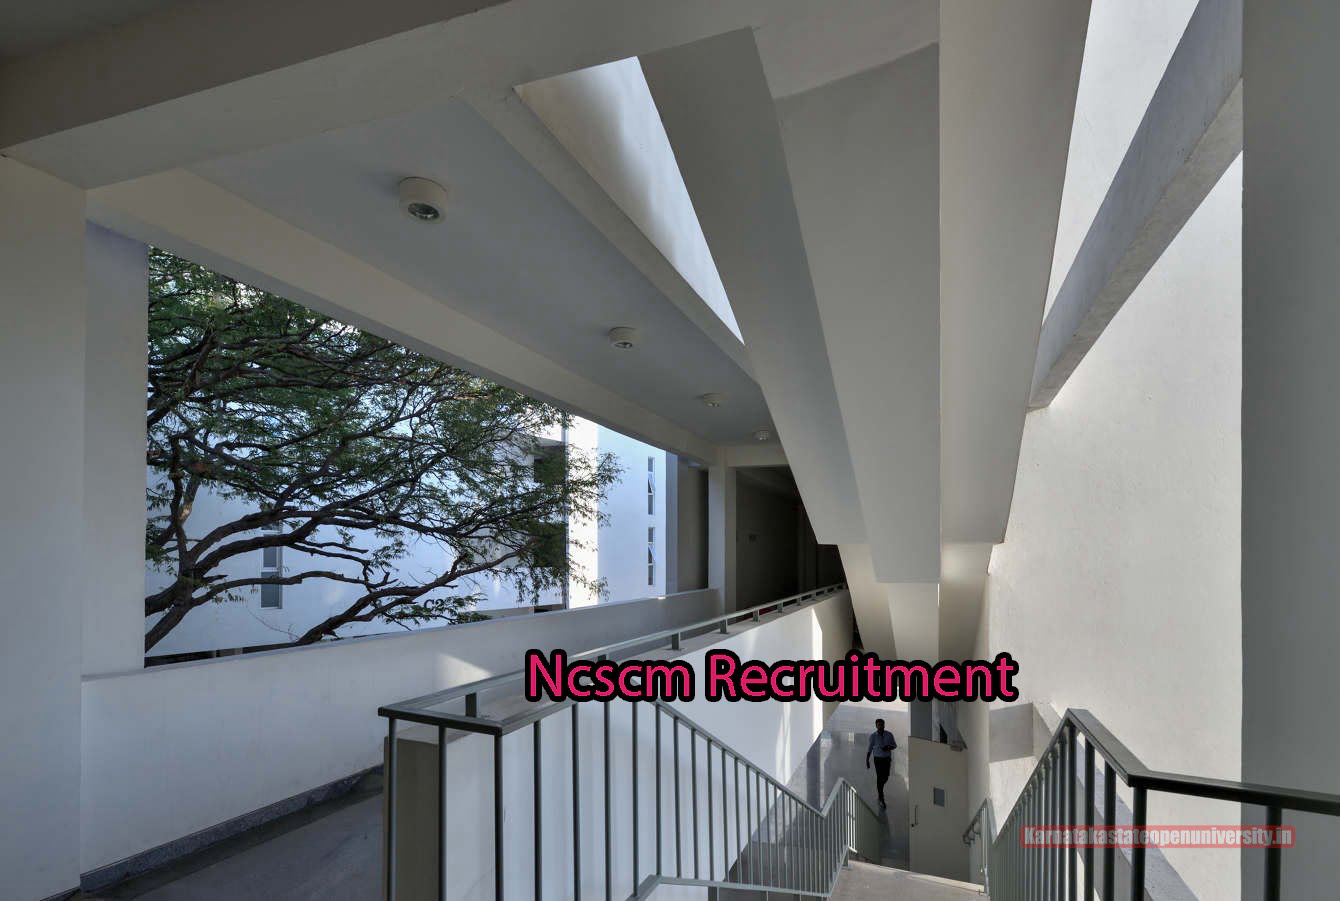 Ncscm Recruitment